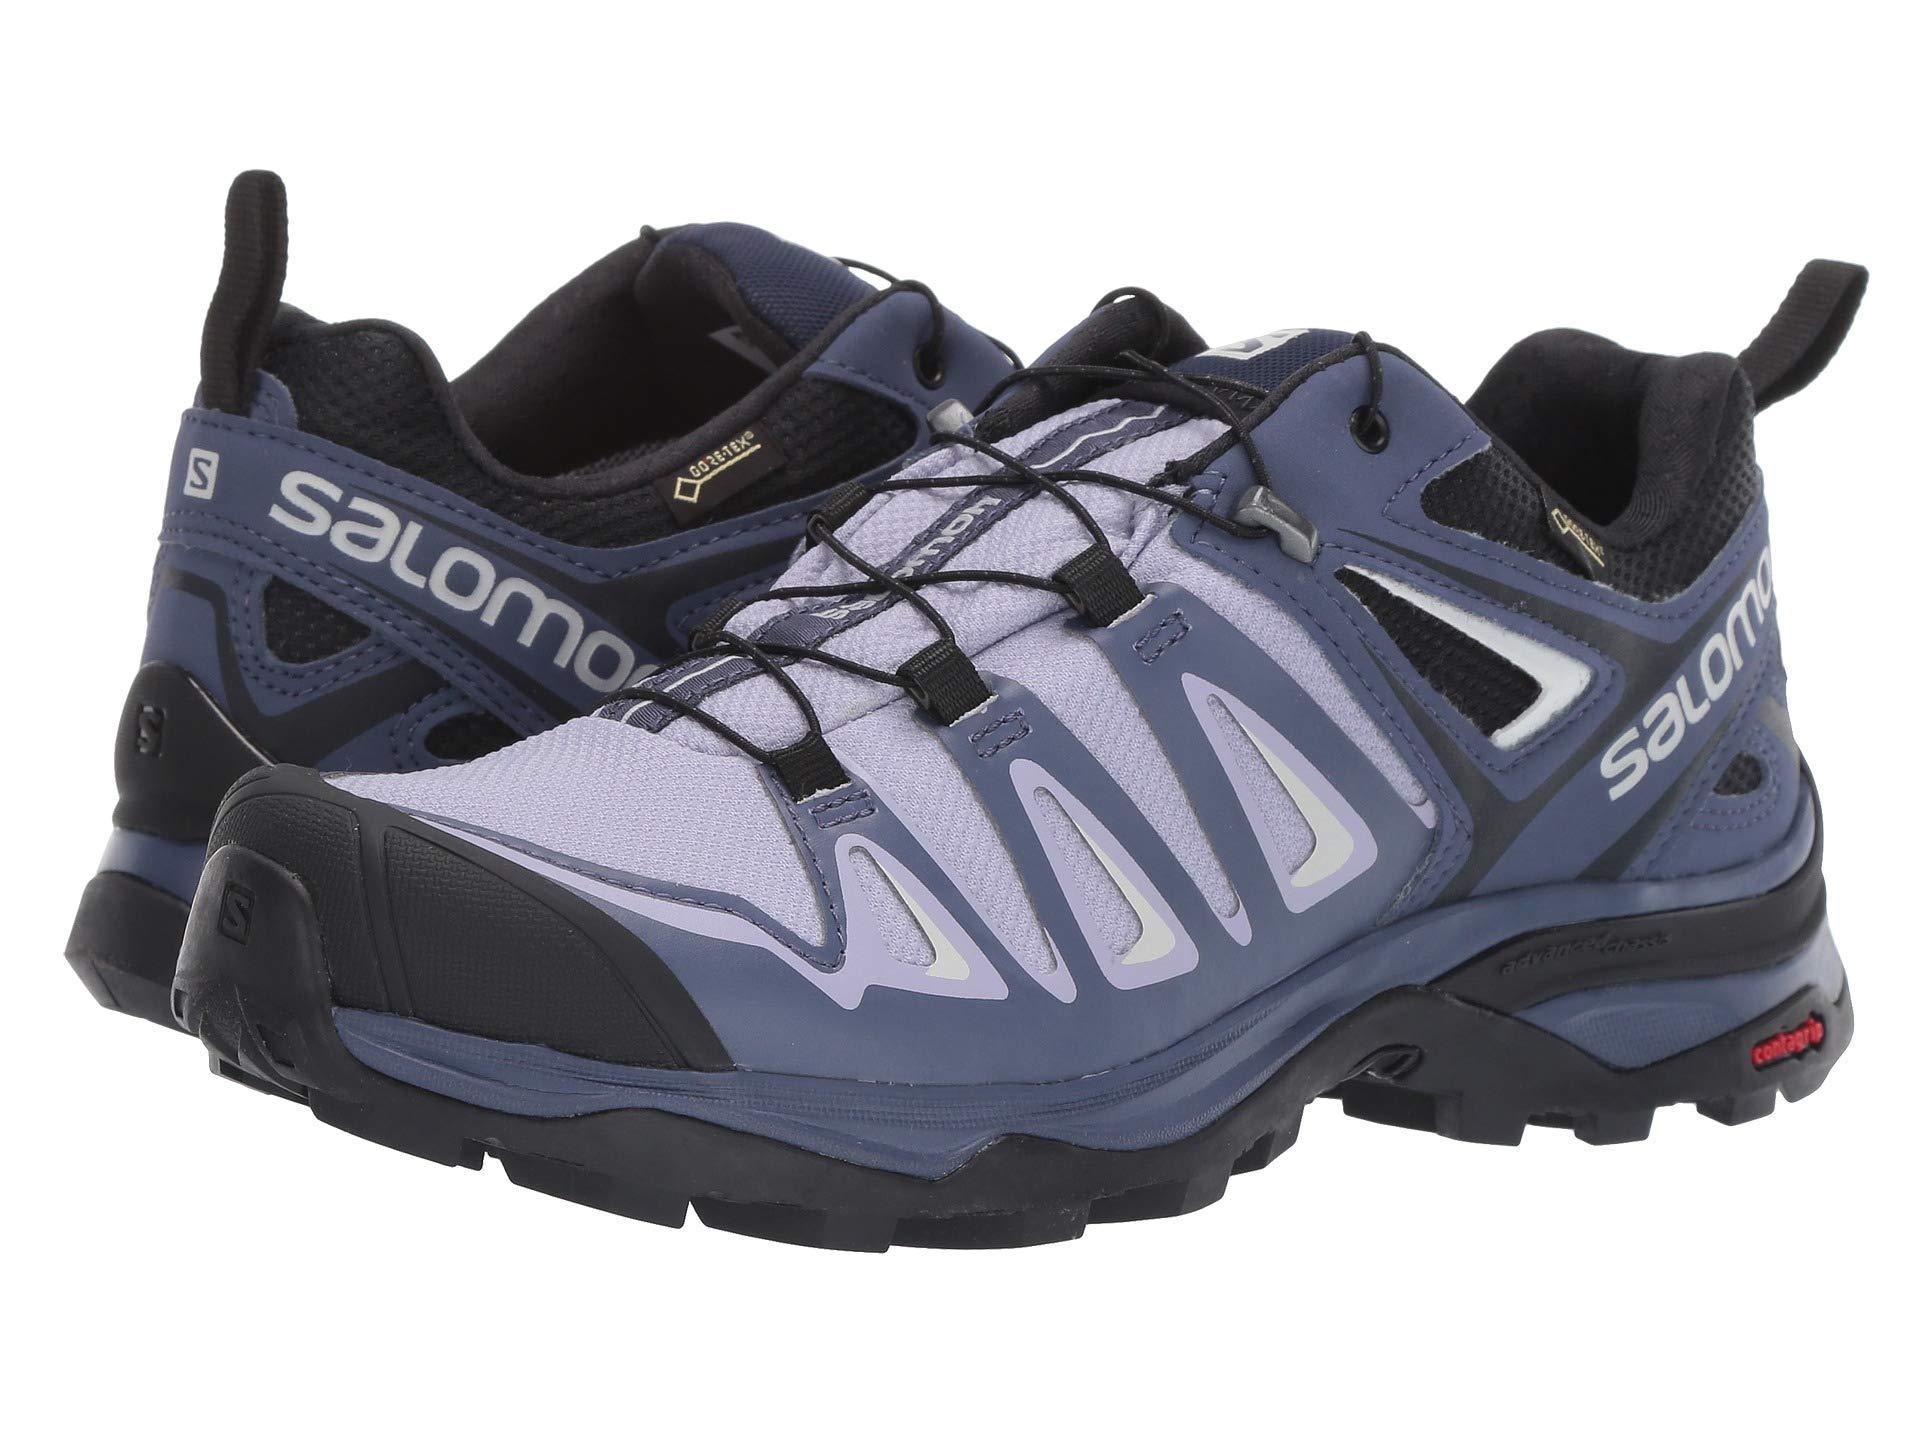 Salomon Rubber X Ultra 3 Gtx Hiking Shoe in Blue - Lyst